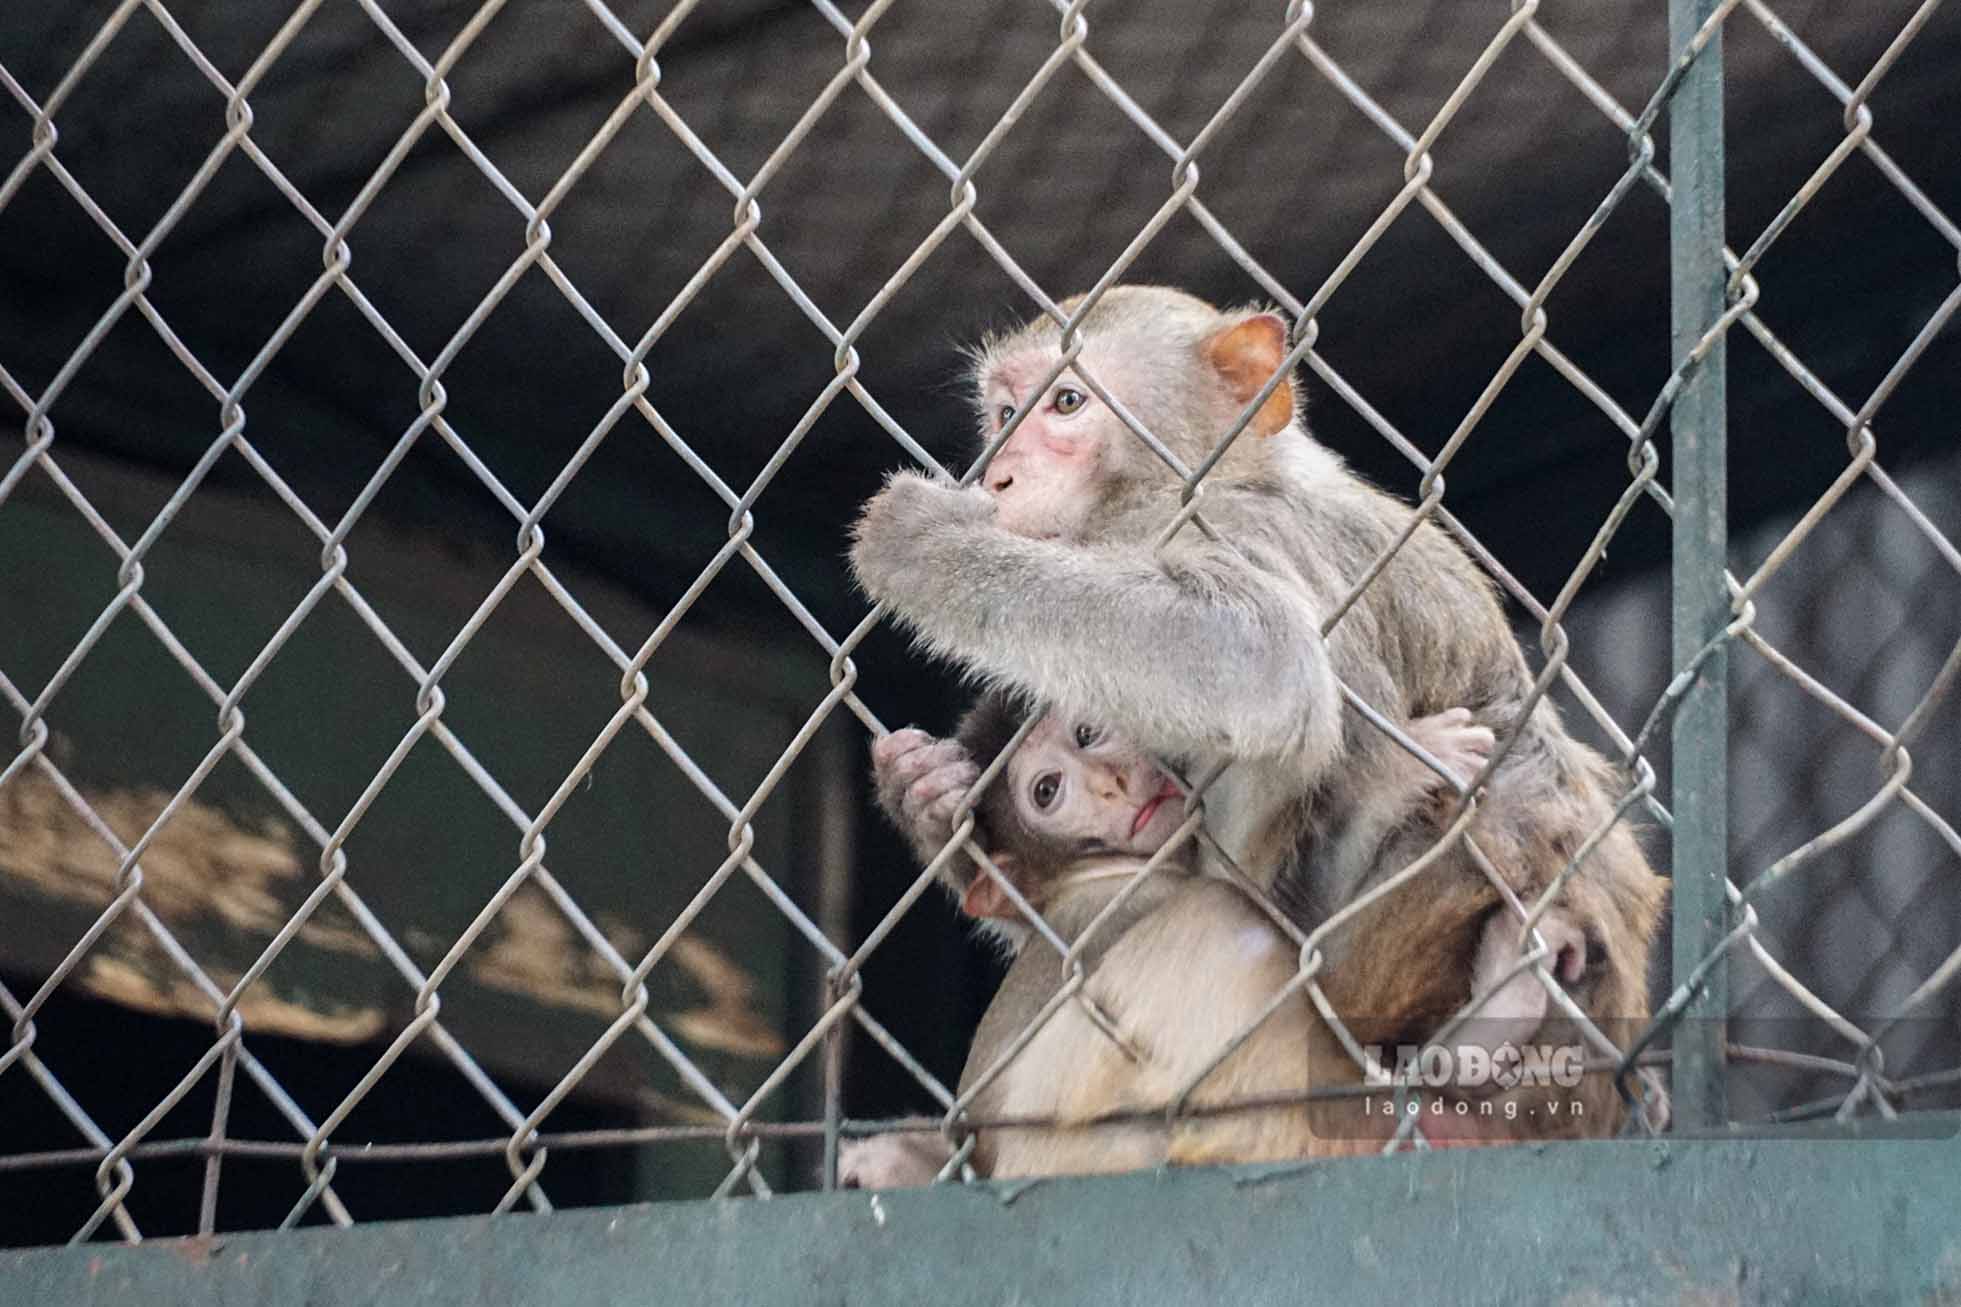 Tuy nhiên, với những chú khỉ con, tuổi đời ngắn chưa hoàn thiện các hệ thống miễn dịch và thể trạng sức khỏe chưa cao đều phải nép vào lòng khỉ mẹ giữ ấm.